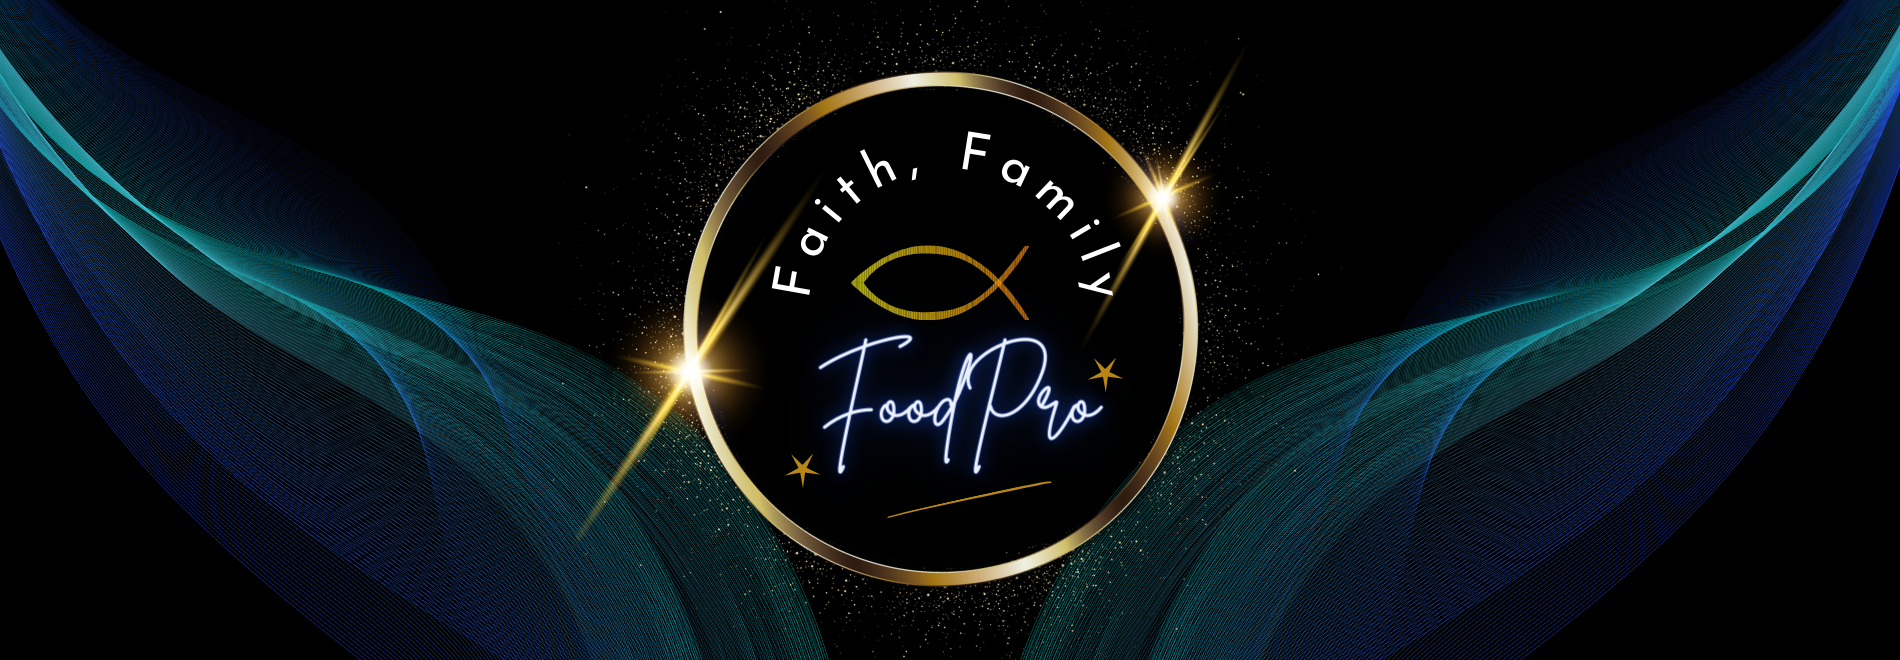 Faith family fp (3)